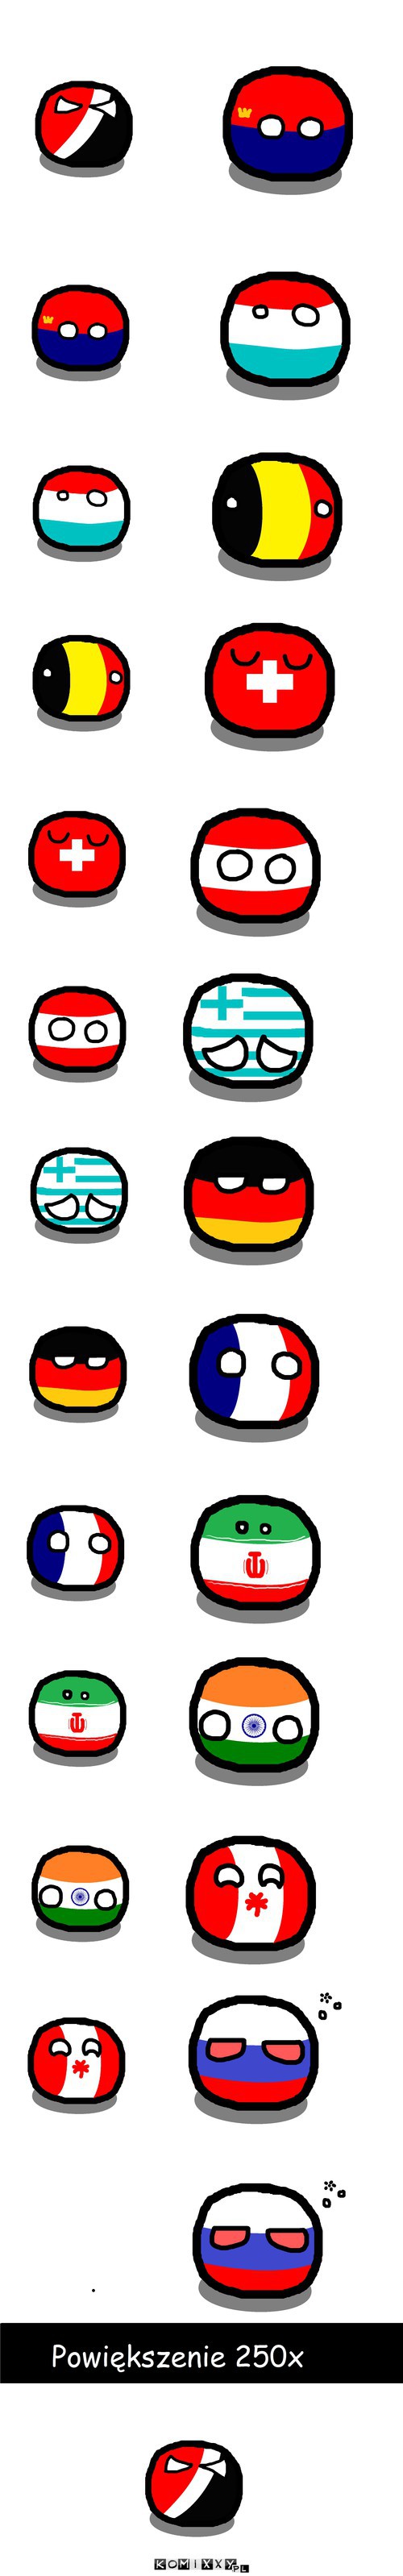 Polandball: Skale –  